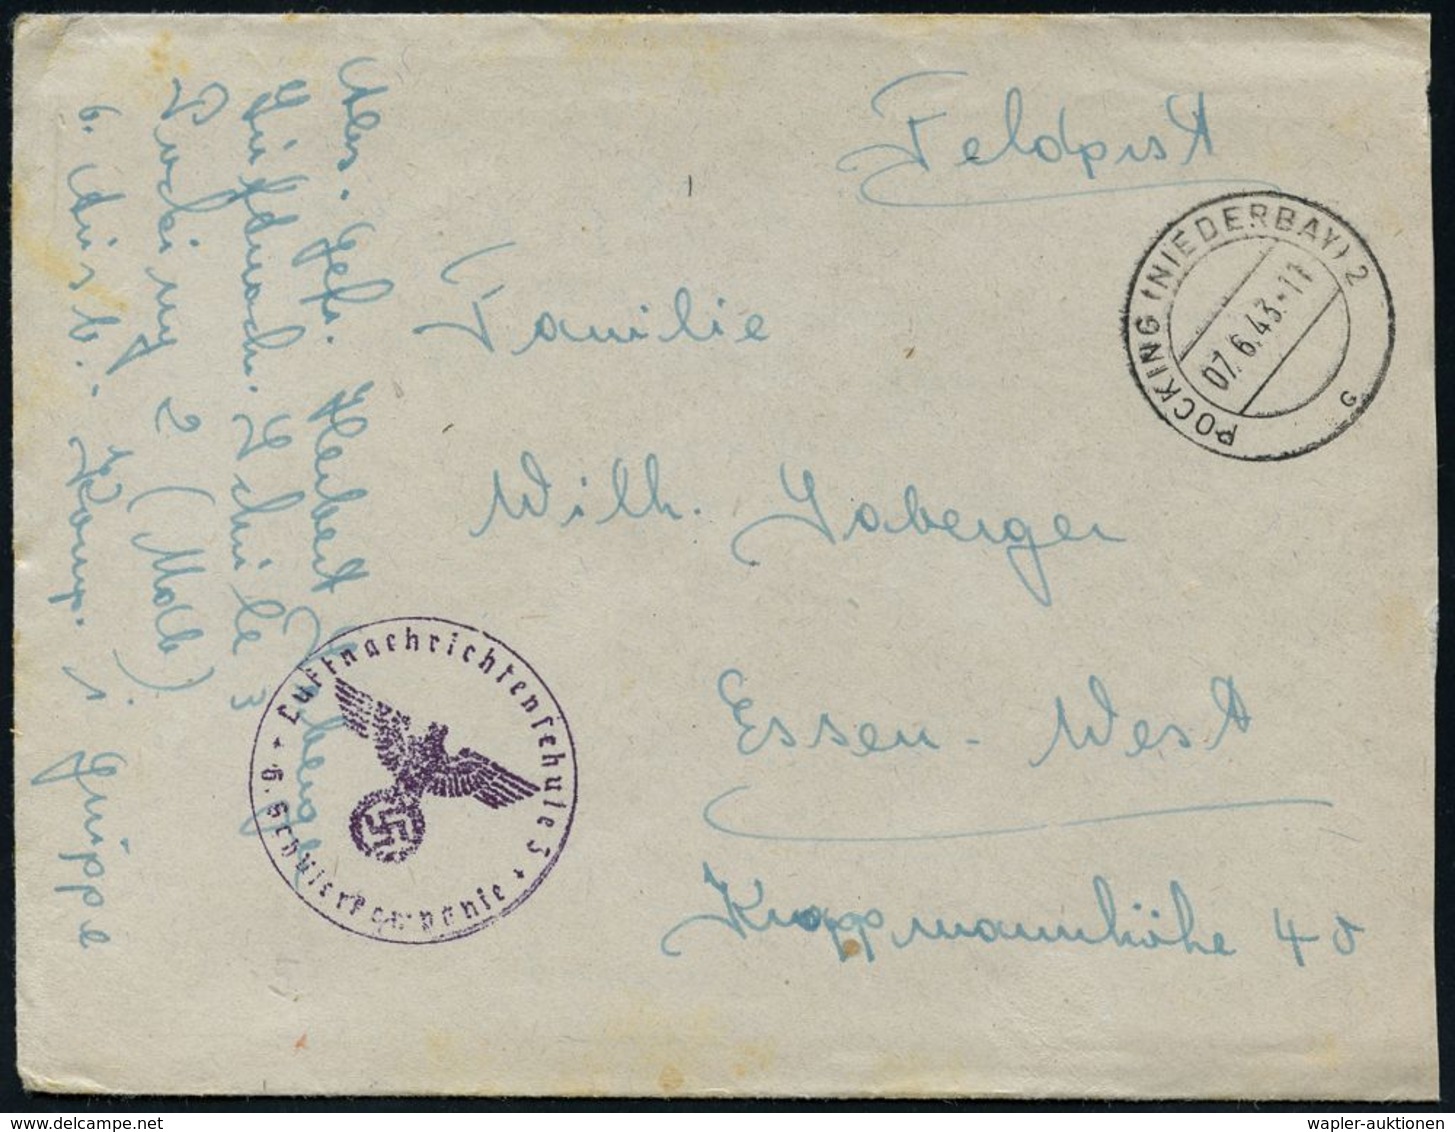 LUFTWAFFEN-FLUGSCHULEN & AKADEMIEN : POCKING (NIEDERBAY) 2/ C #bzw.# B 1941/43 3 Verschiedene Briefstempel Der Luftnachr - Airplanes